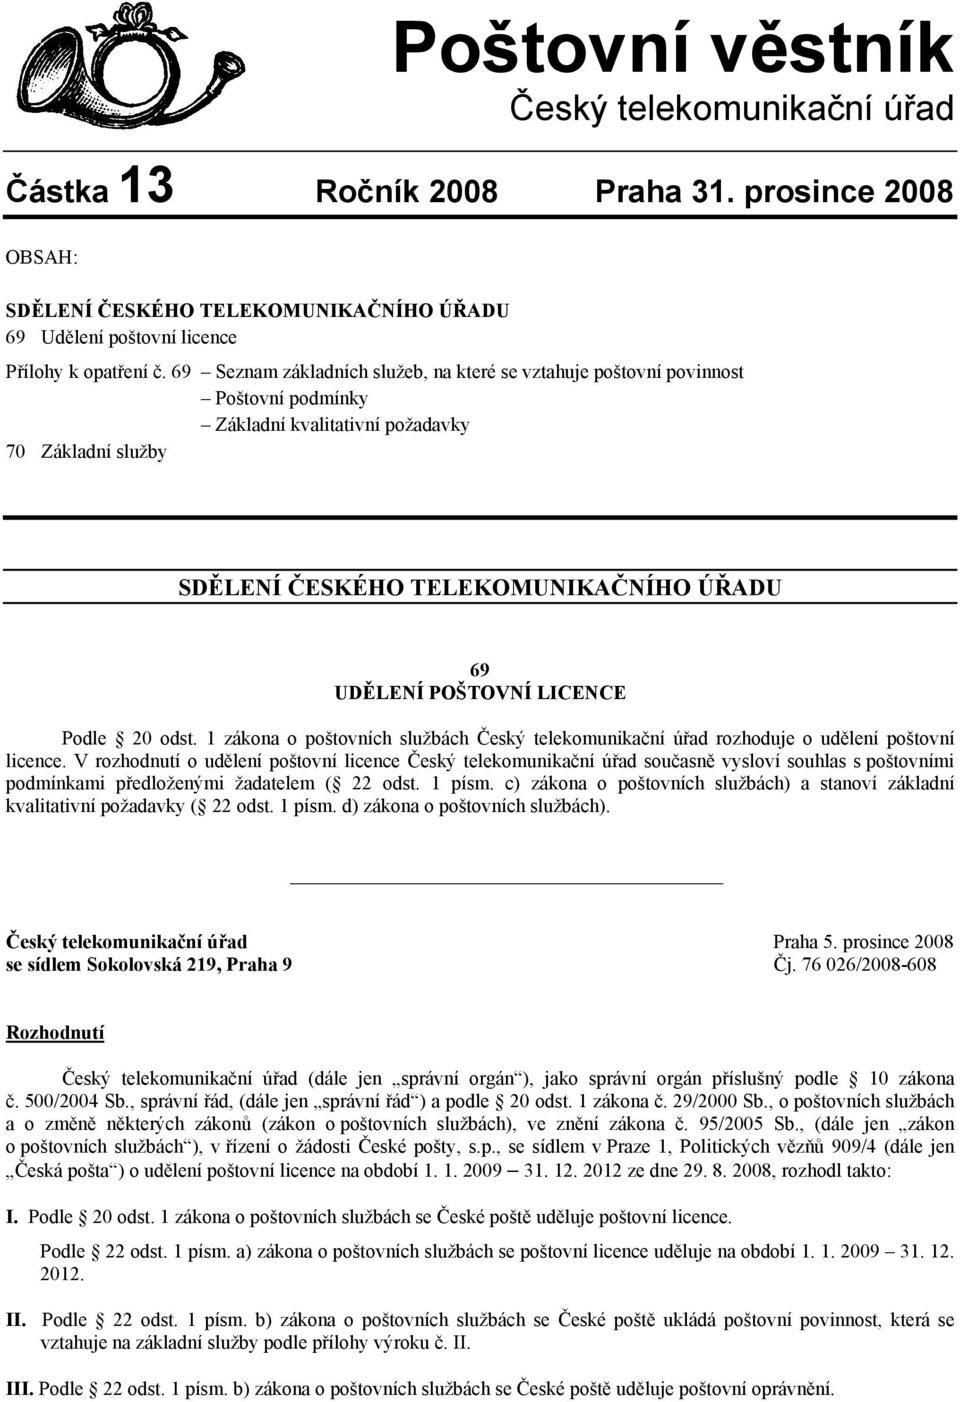 LICENCE Podle 20 odst. 1 zákona o poštovních službách Český telekomunikační úřad rozhoduje o udělení poštovní licence.